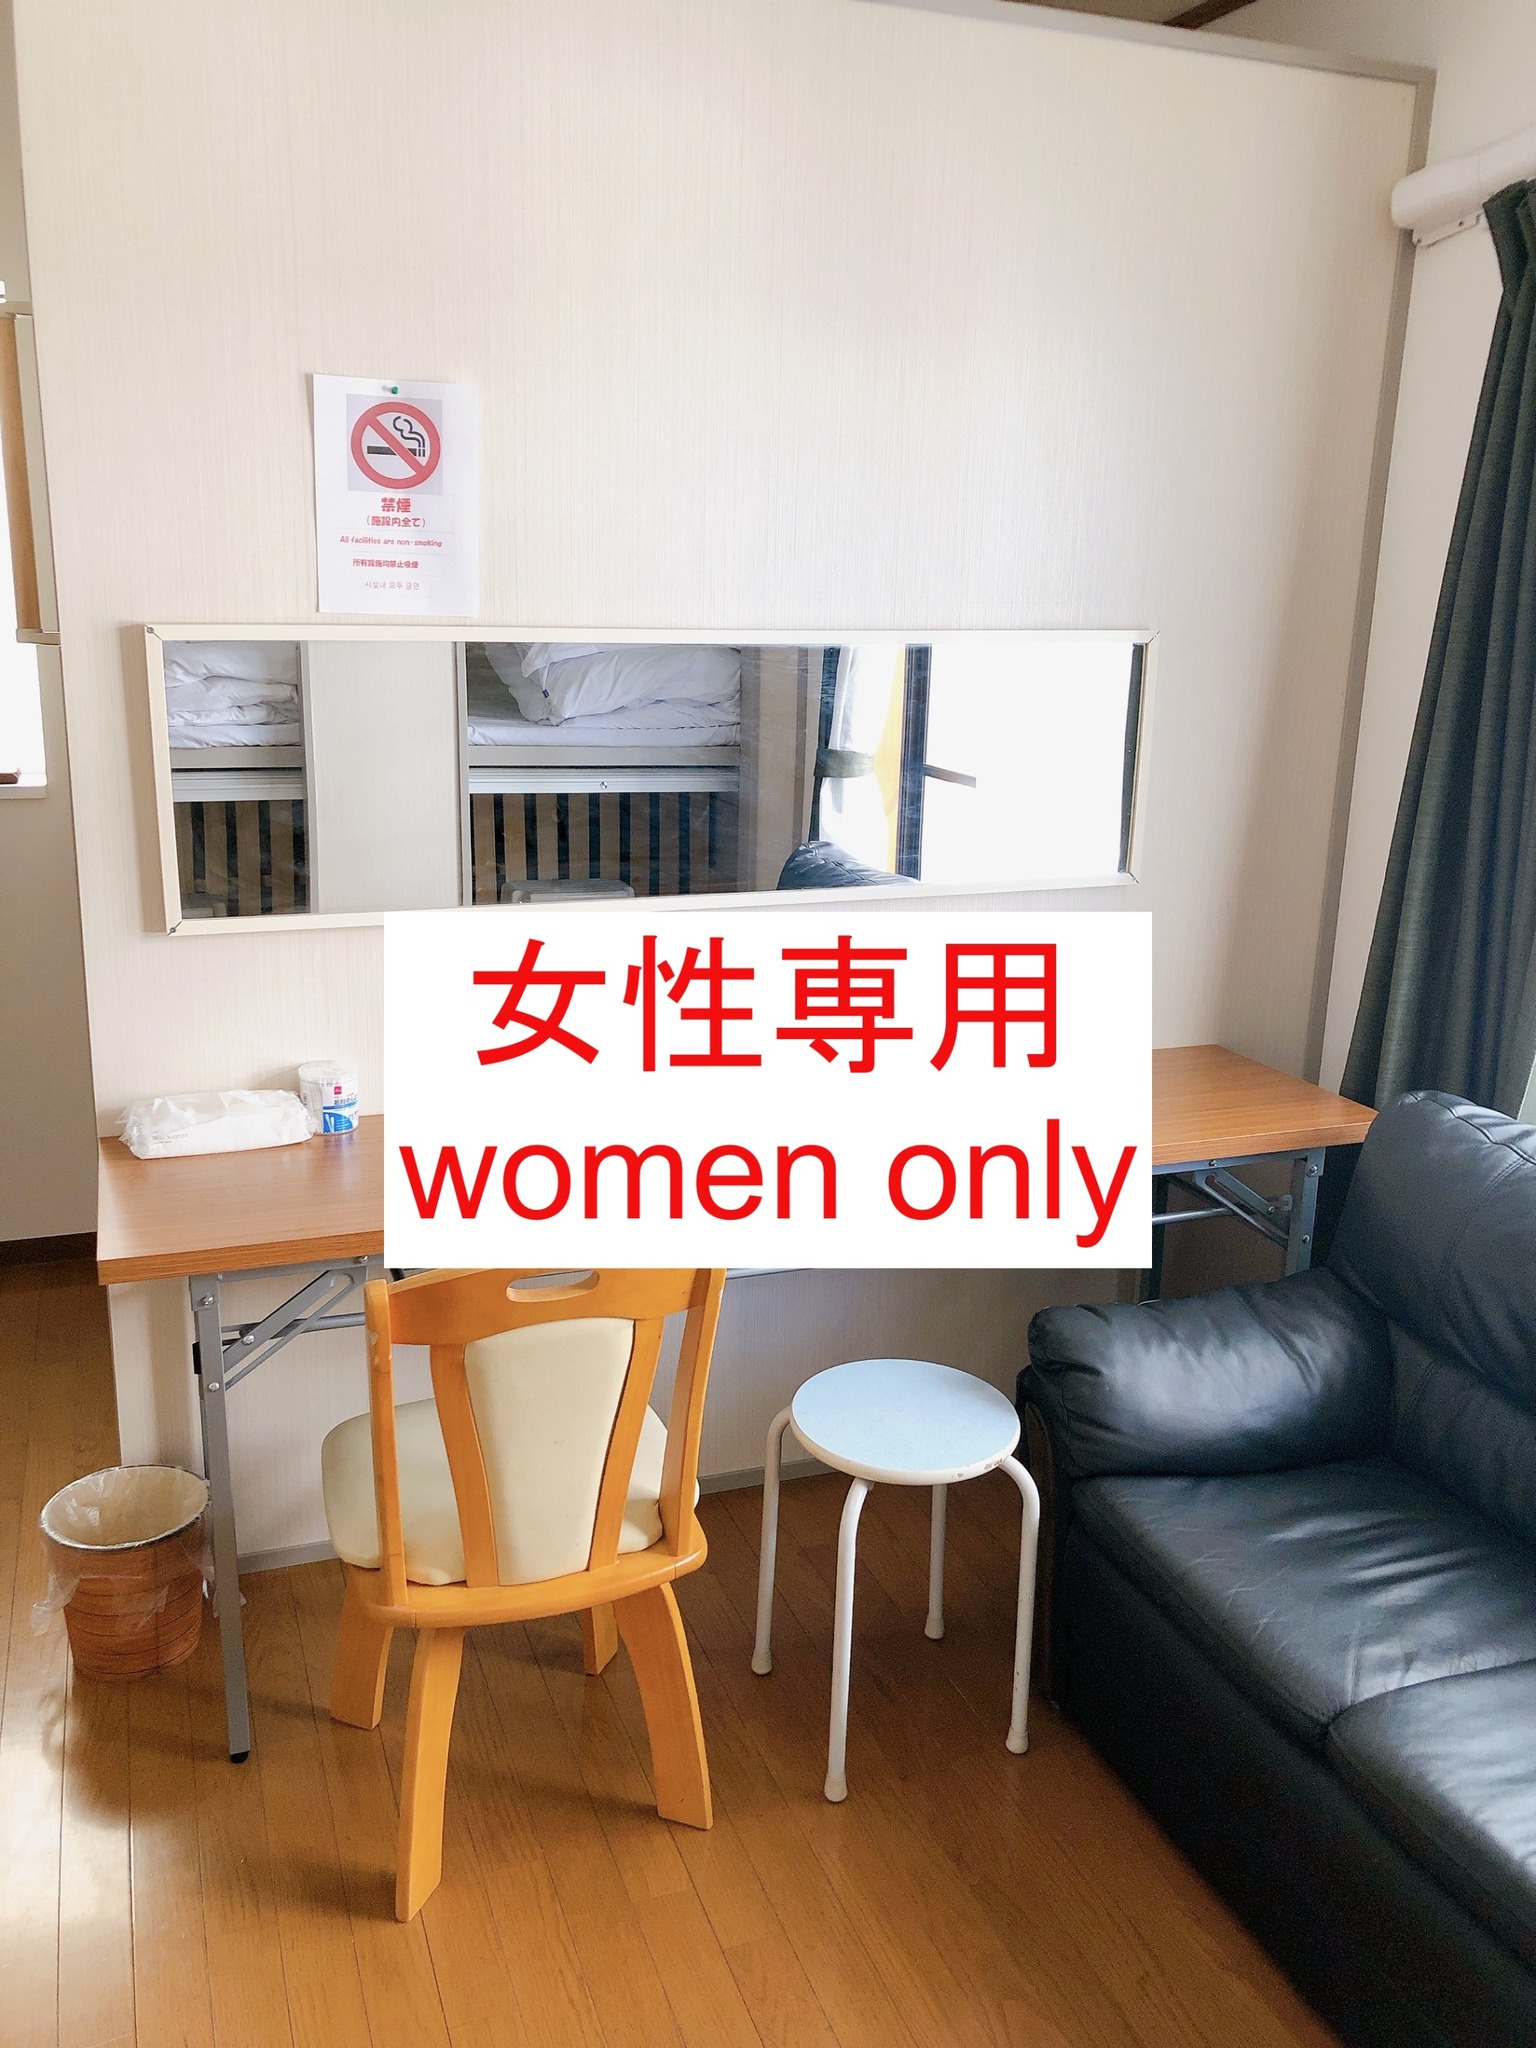 2階【ドミトリータイプ】女性専用ルーム/最大5名様まで宿泊可能(ベッド1名分)